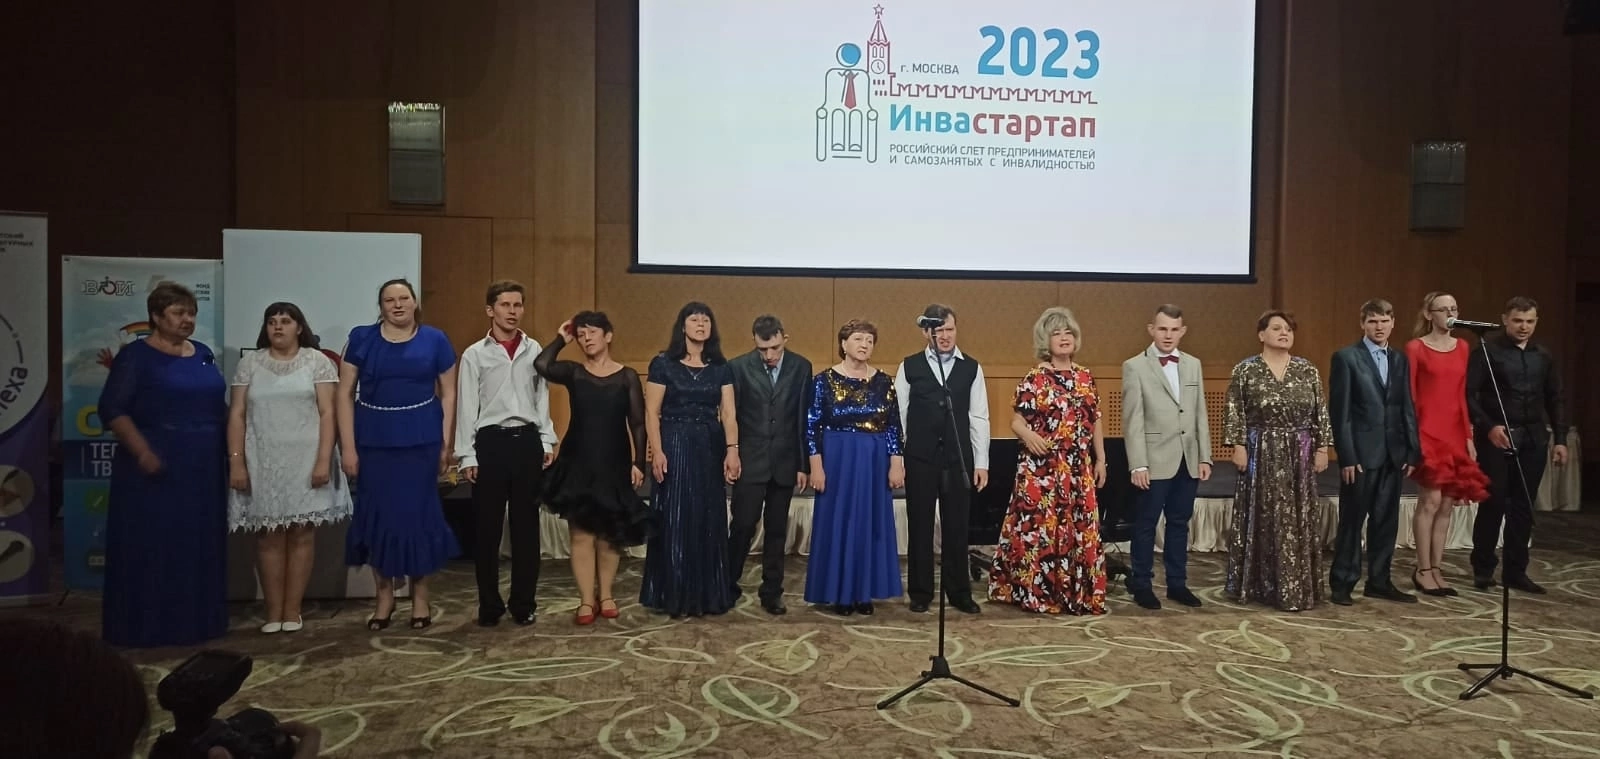 коллектив «Семейное дело» выступил в Москве перед участниками Инвастартап 2023